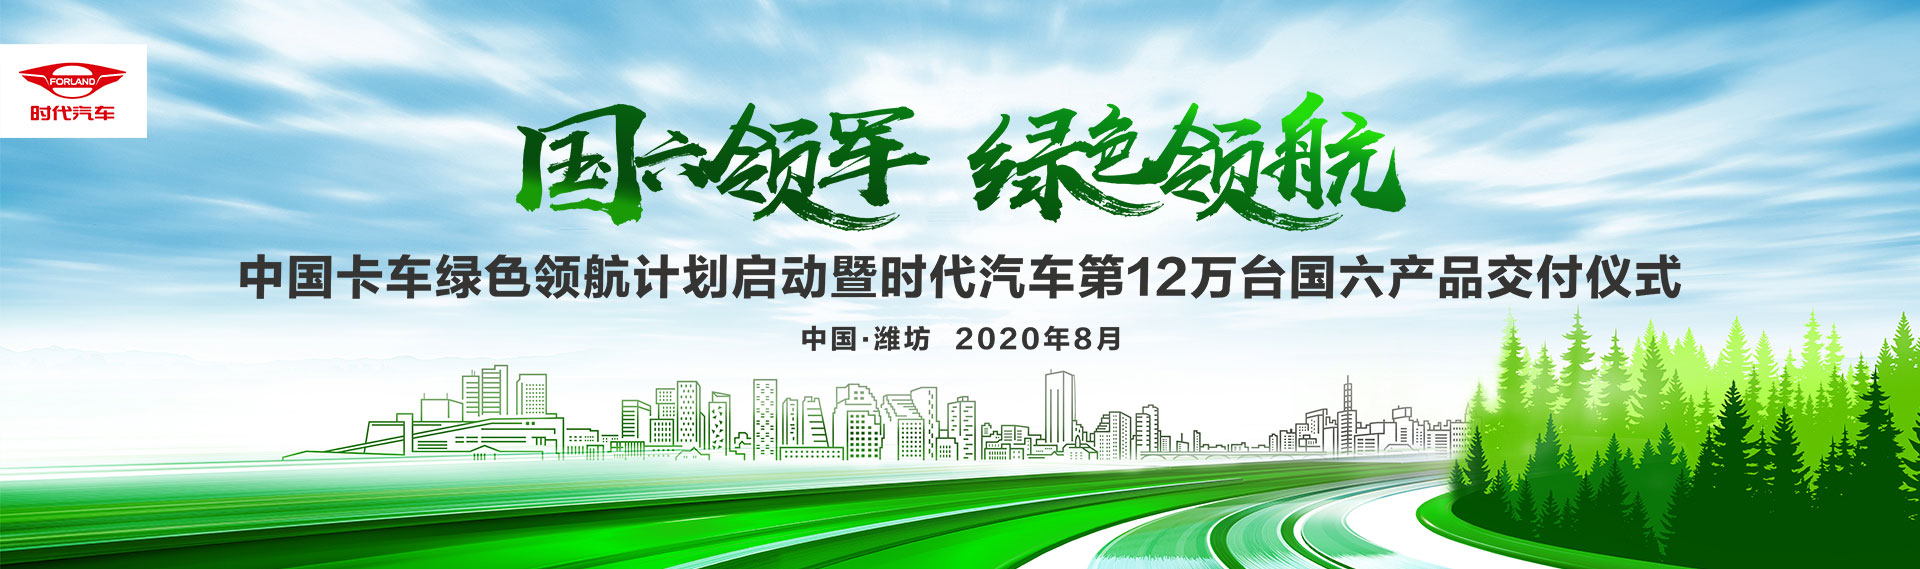 中国卡车绿色领航计划启动暨时代汽车第12万台国六产品交付仪式